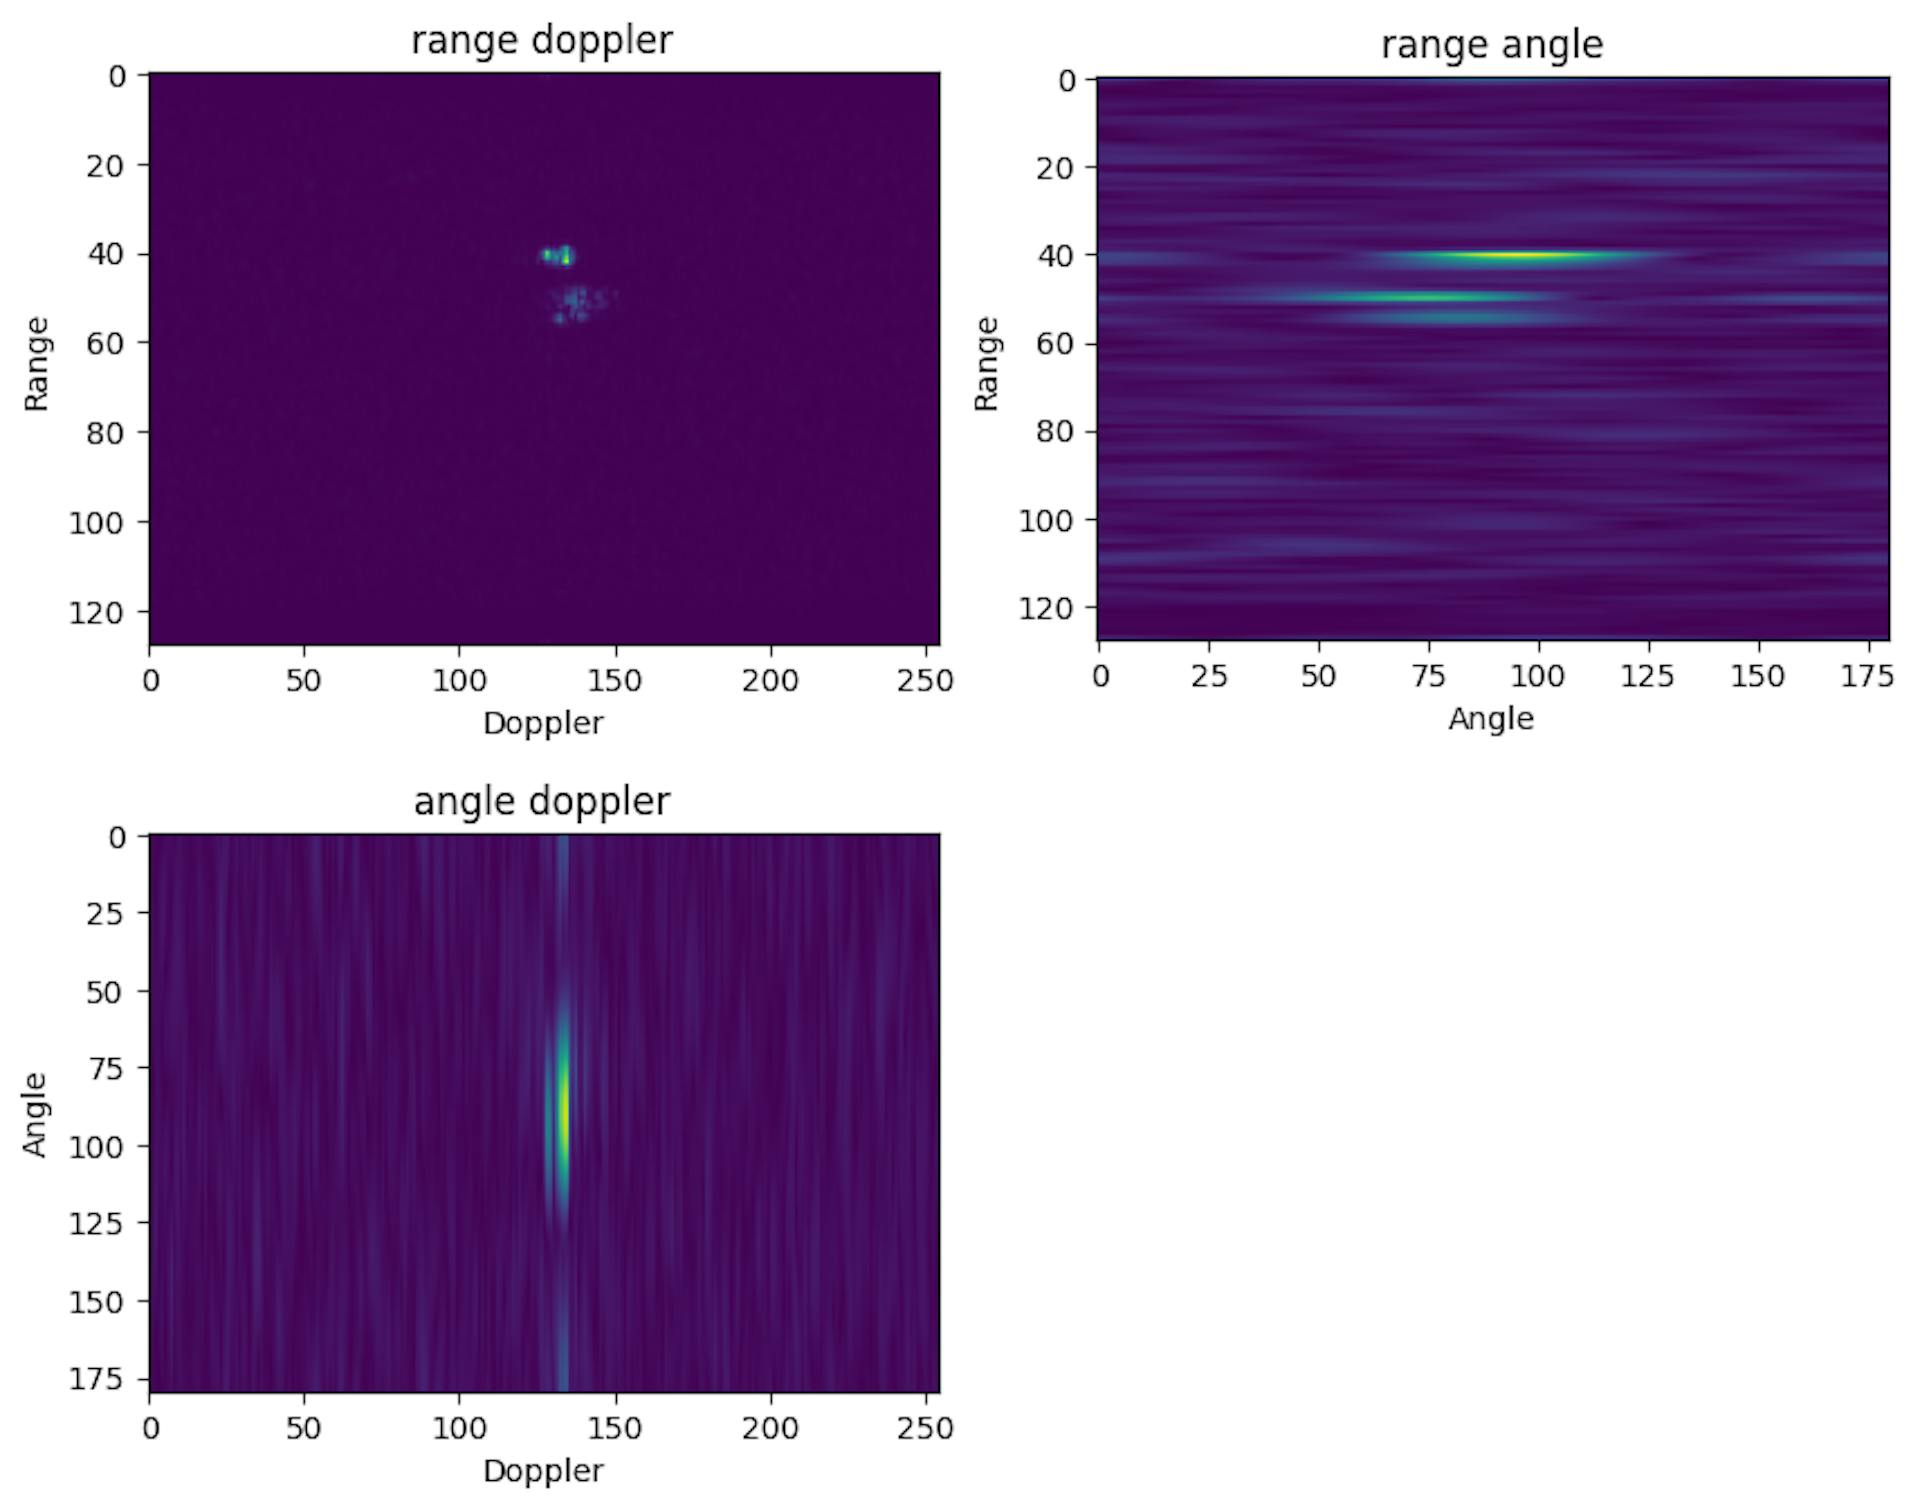 Üçüncü Fourier Dönüşümünün tüm Rx antenlerine uygulanması, aralık doppler açılı bir küple sonuçlanacaktır. Küp, menzil-doppler, menzil-açı ve açı-hız görüntüleri olarak görselleştirilebilir.